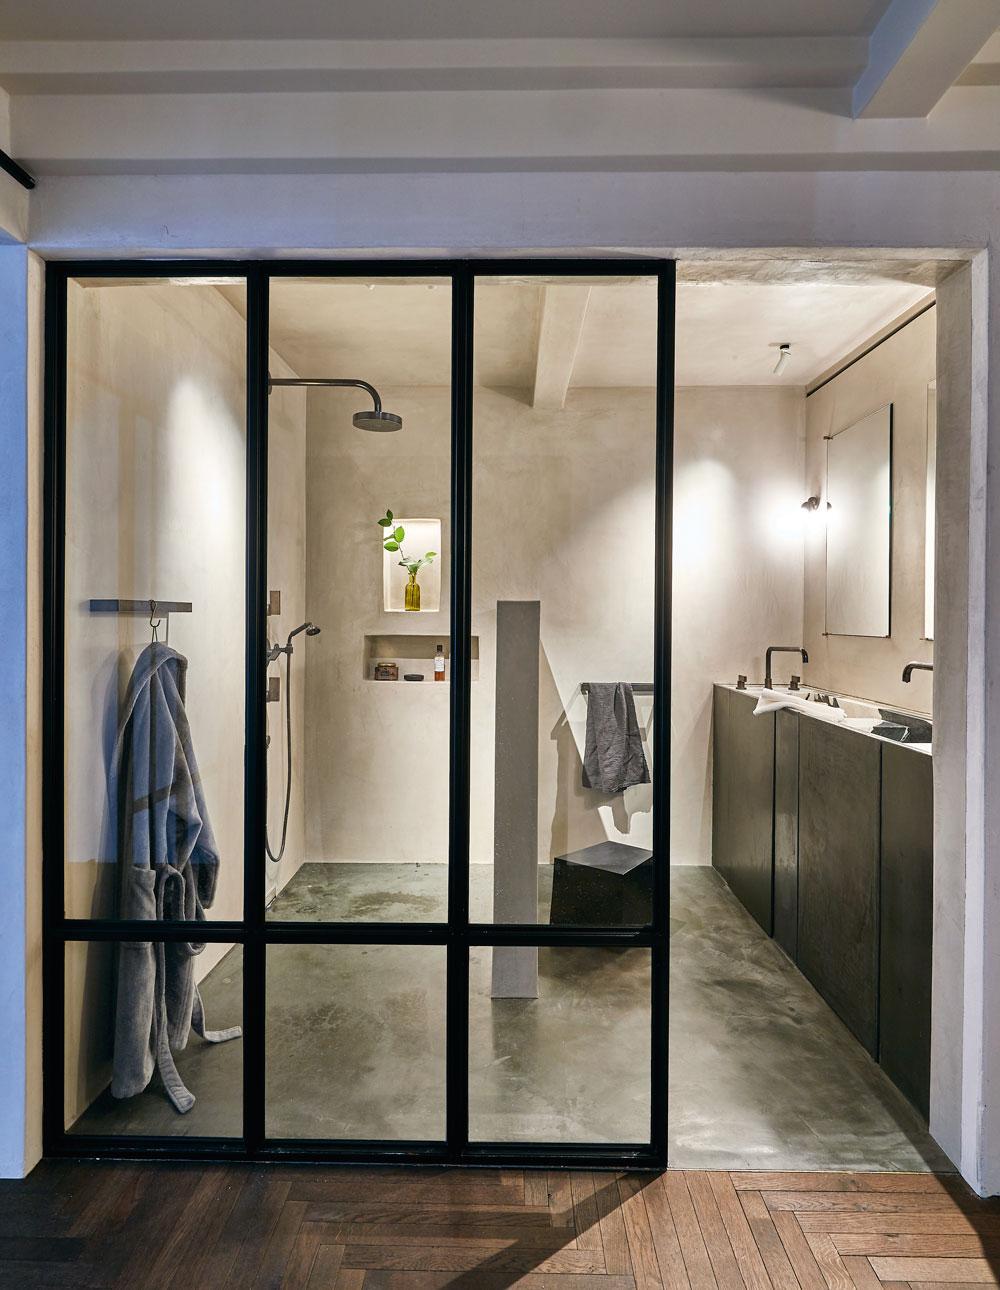 L'intérieur du bâtiment joue au maximum sur les matières transparentes : même la salle de bains a été pourvue d'une paroi en verre.